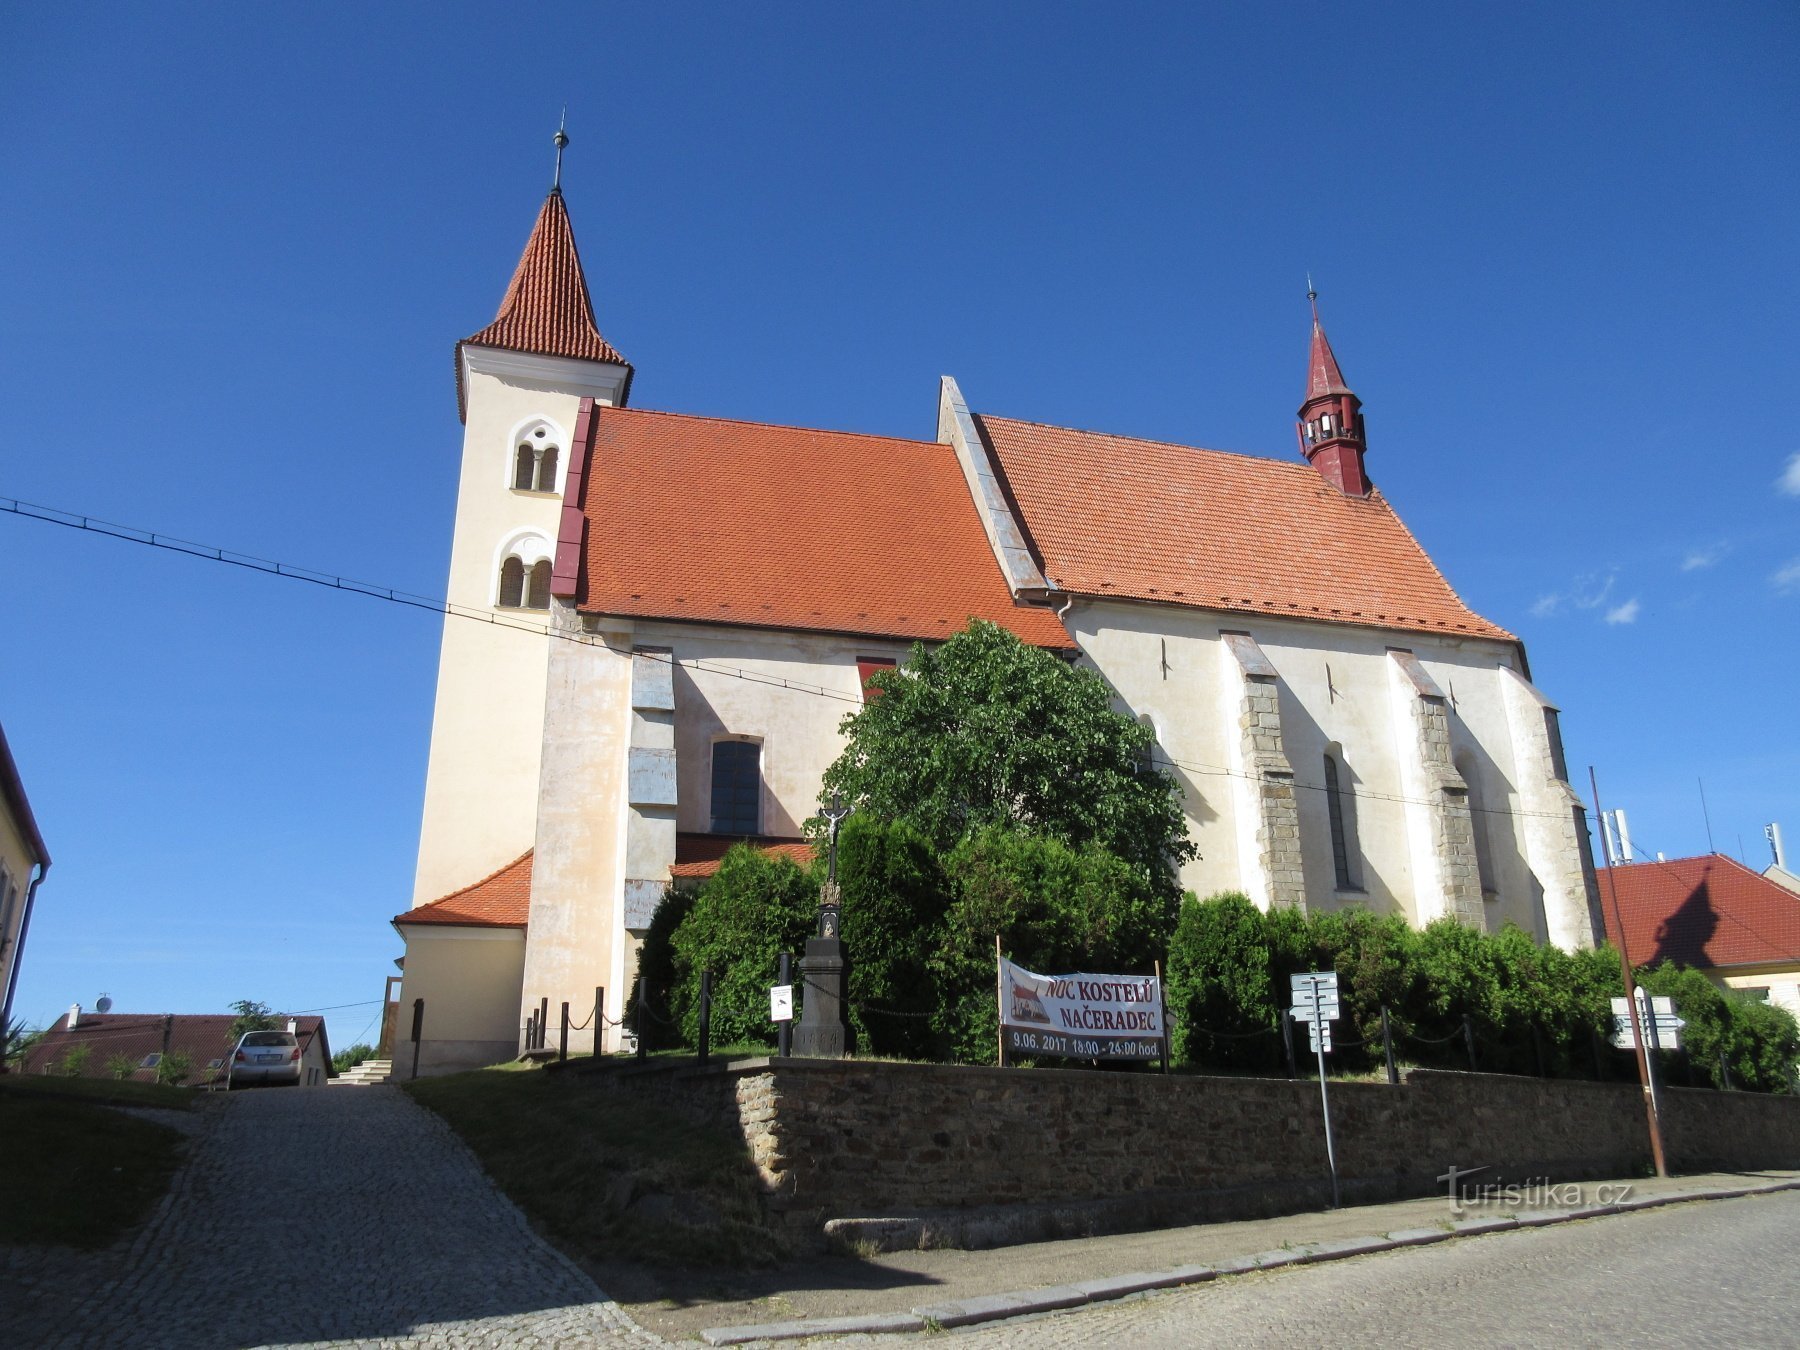 Načeradec – church and fortress